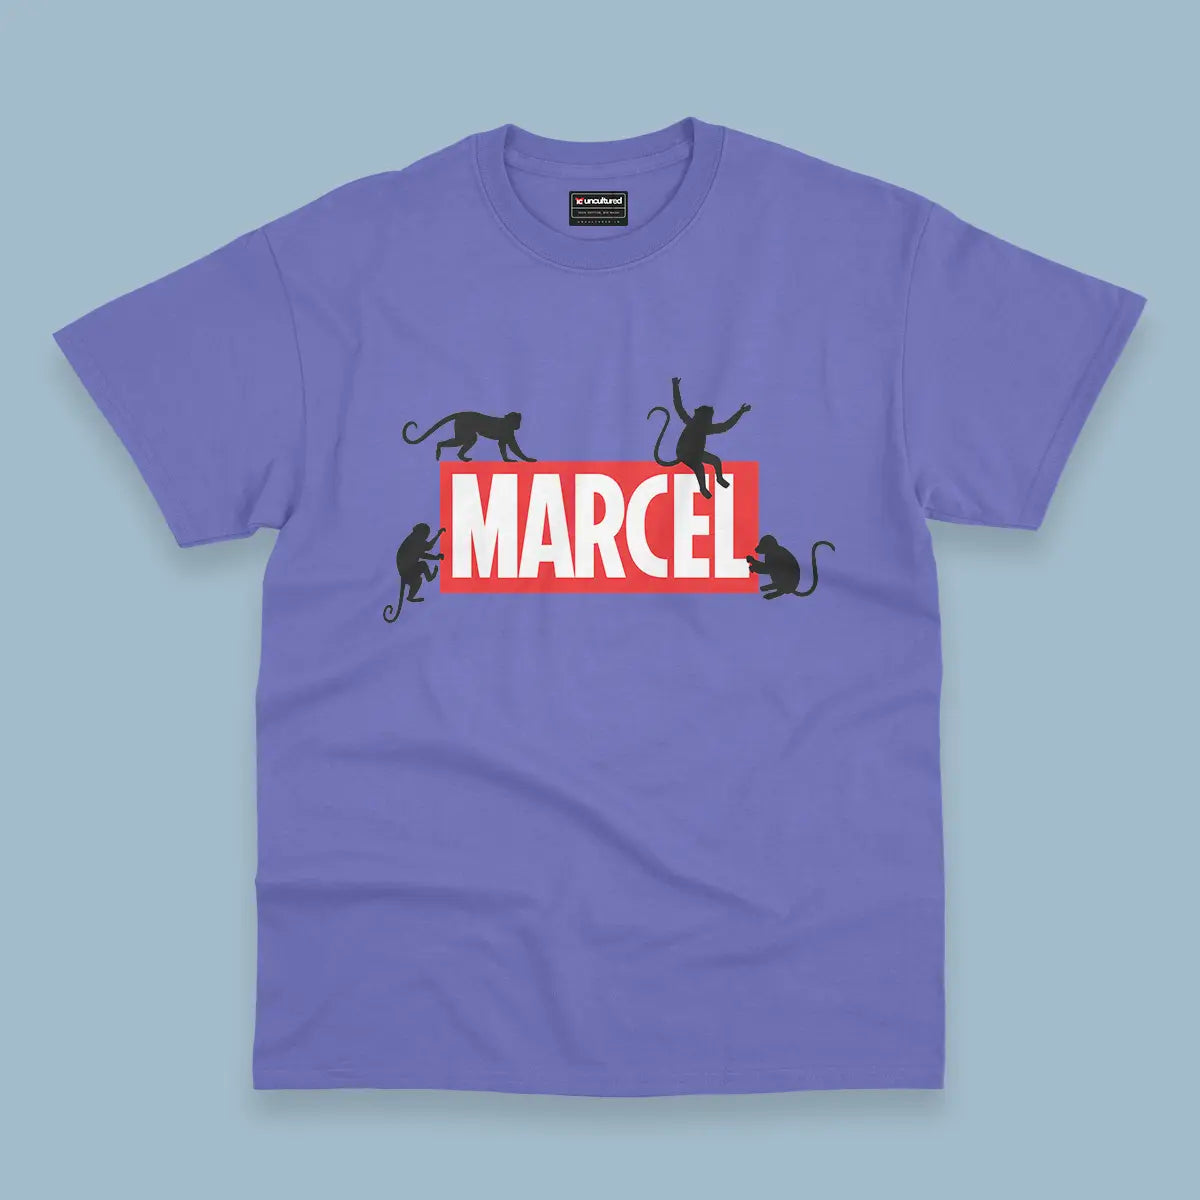 Marcel - Oversized